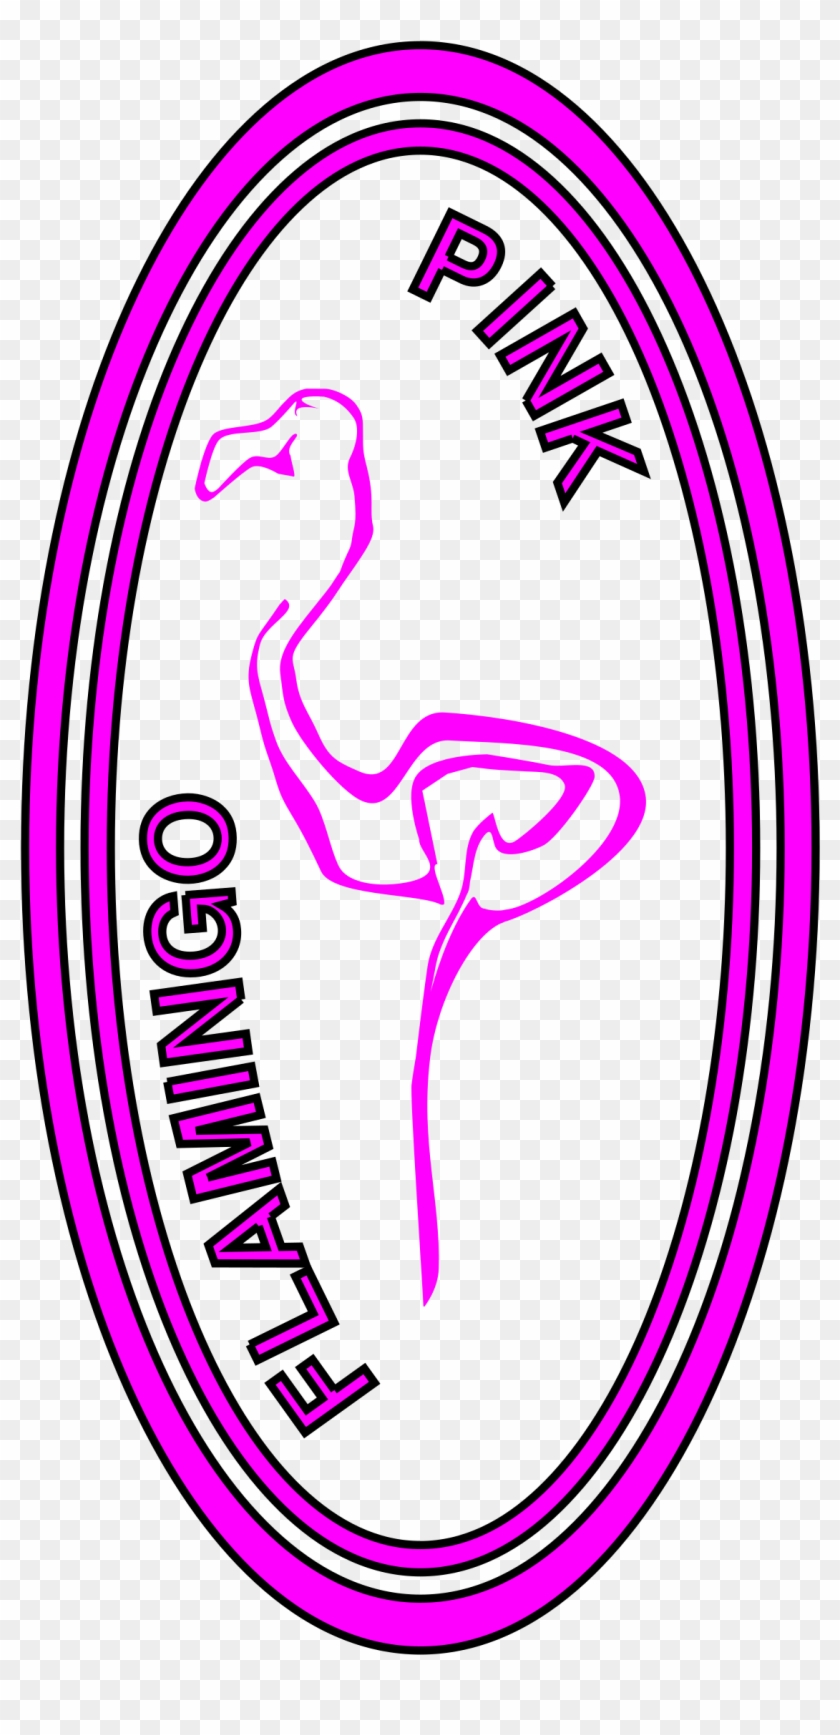 Large Flamingo Clip Art For Pinterest - Clip Art #752921